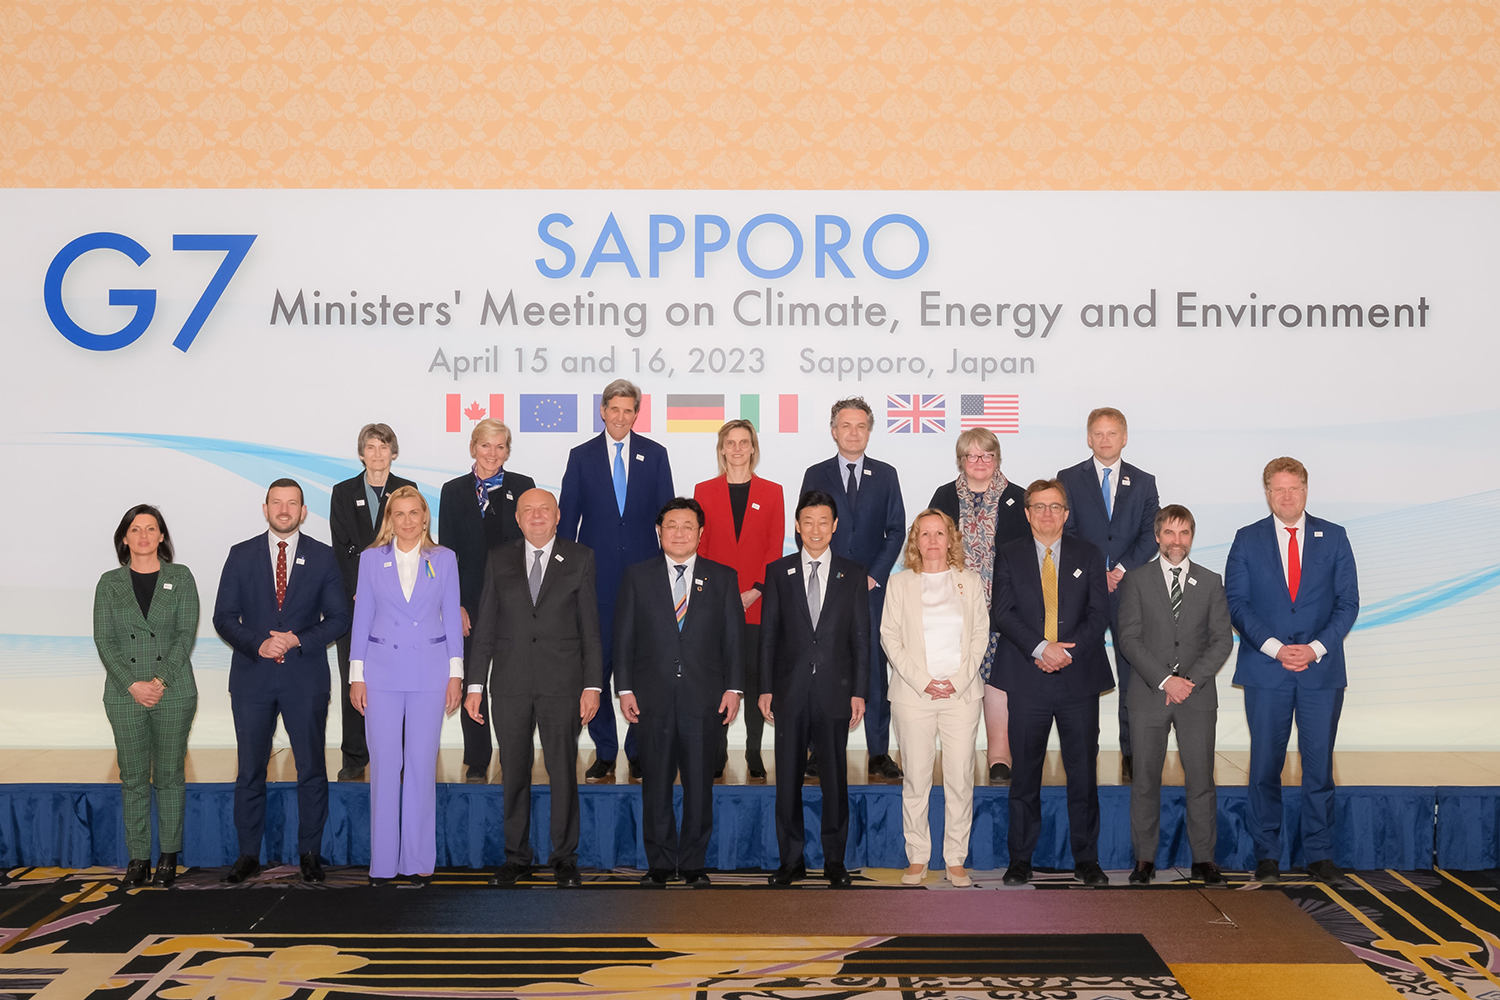 G7環境相会合の記念撮影